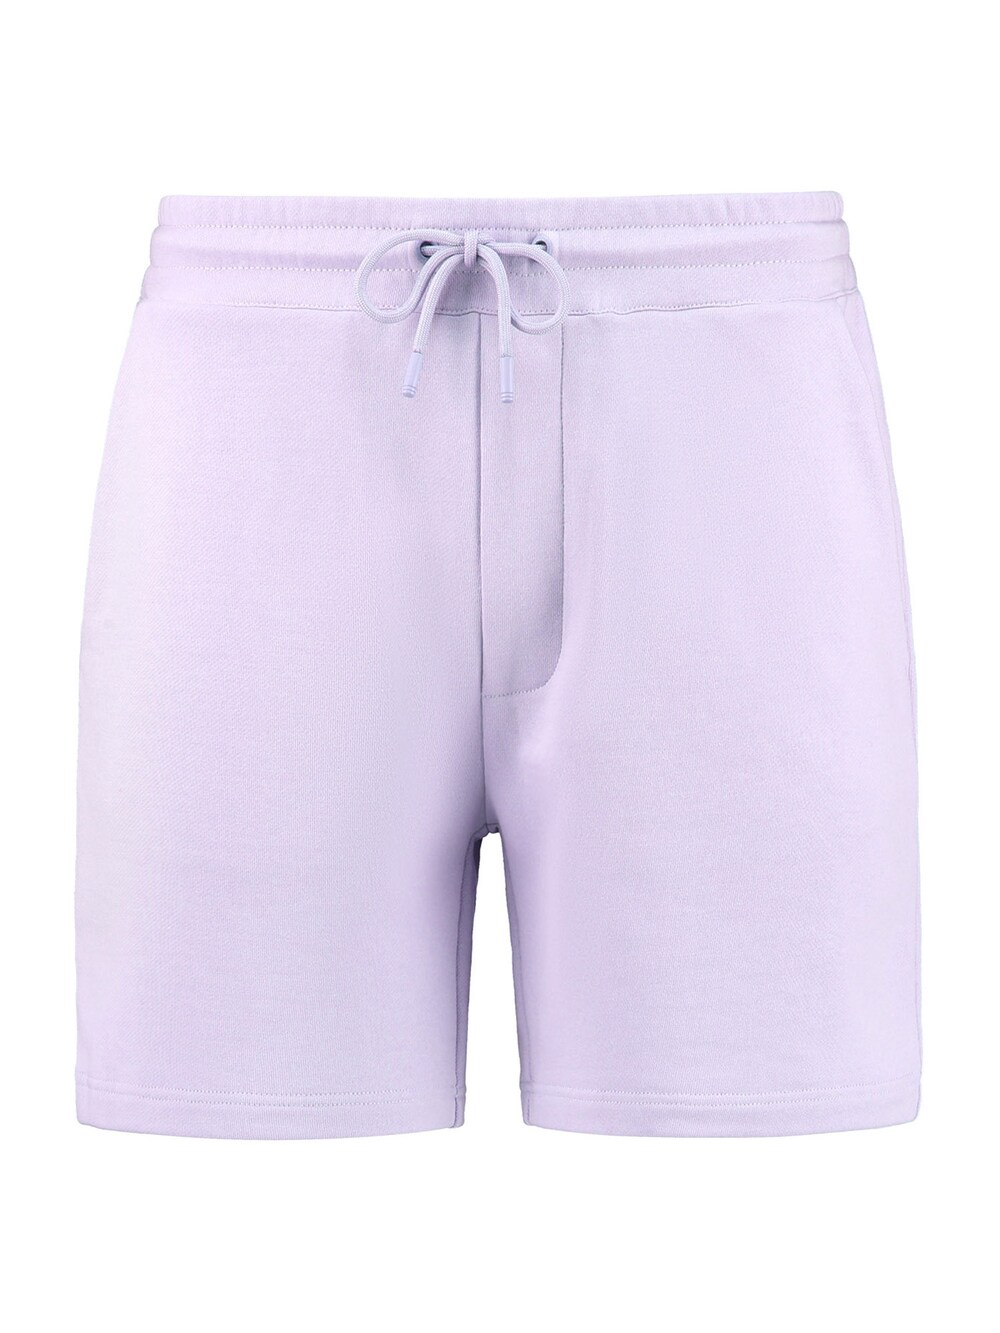 Обычные брюки Shiwi, пастельно-фиолетовый